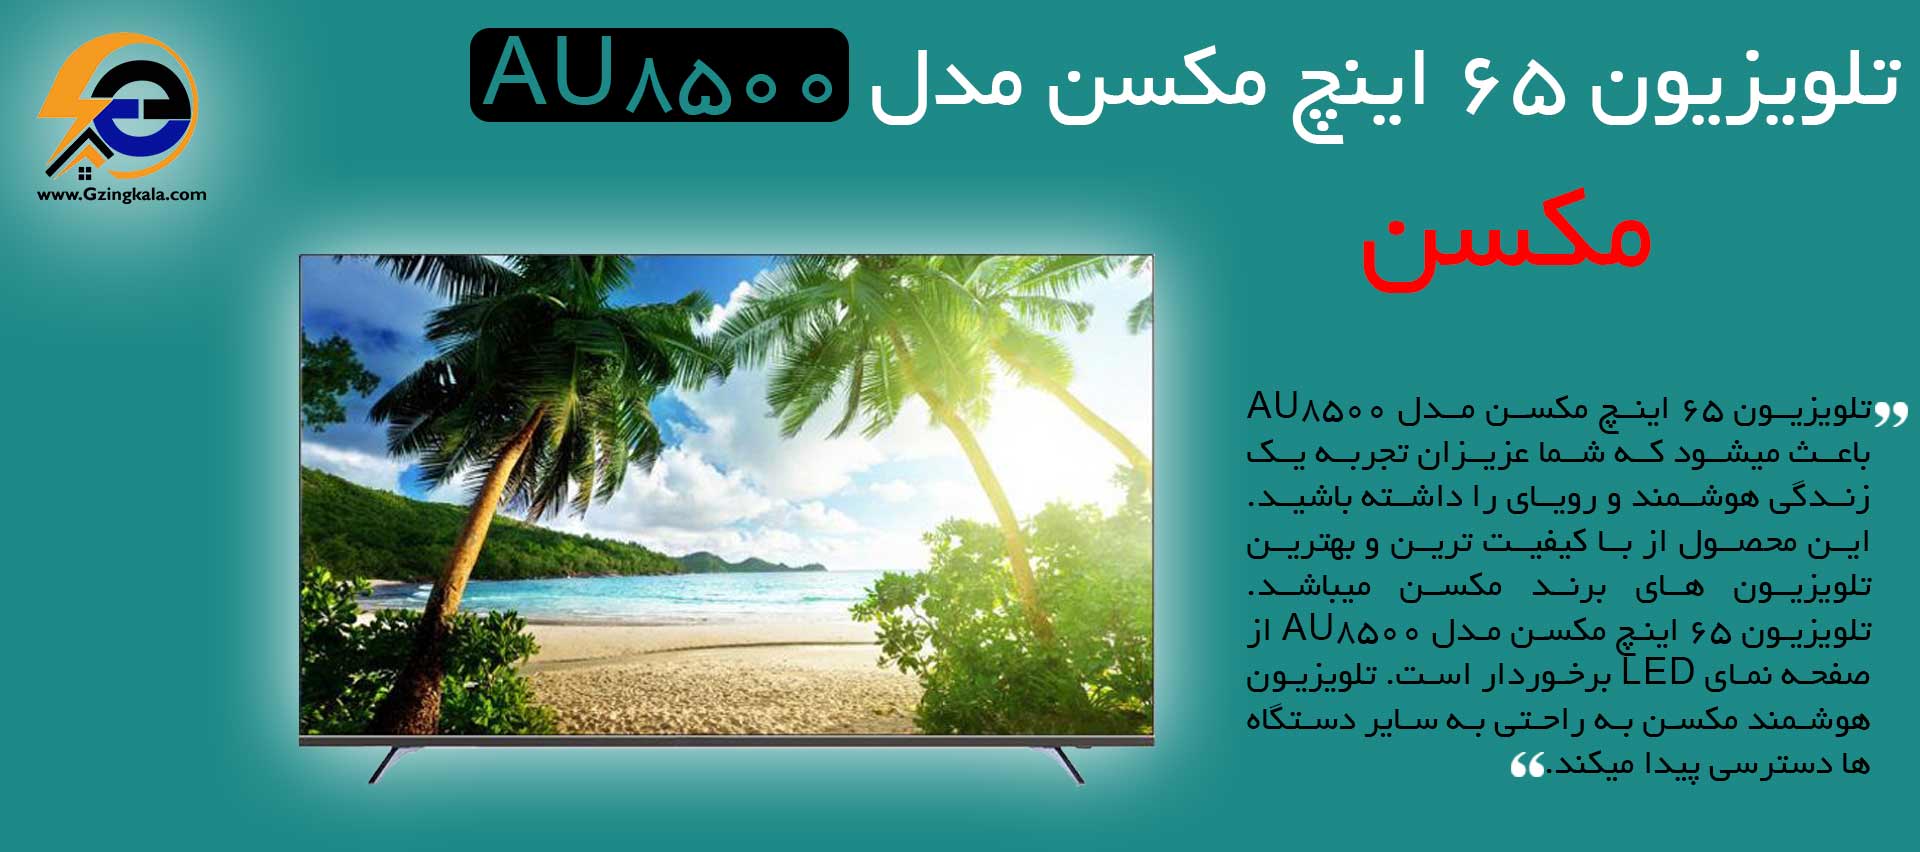 تلویزیون 65 اینچ مکسن مدل AU8500